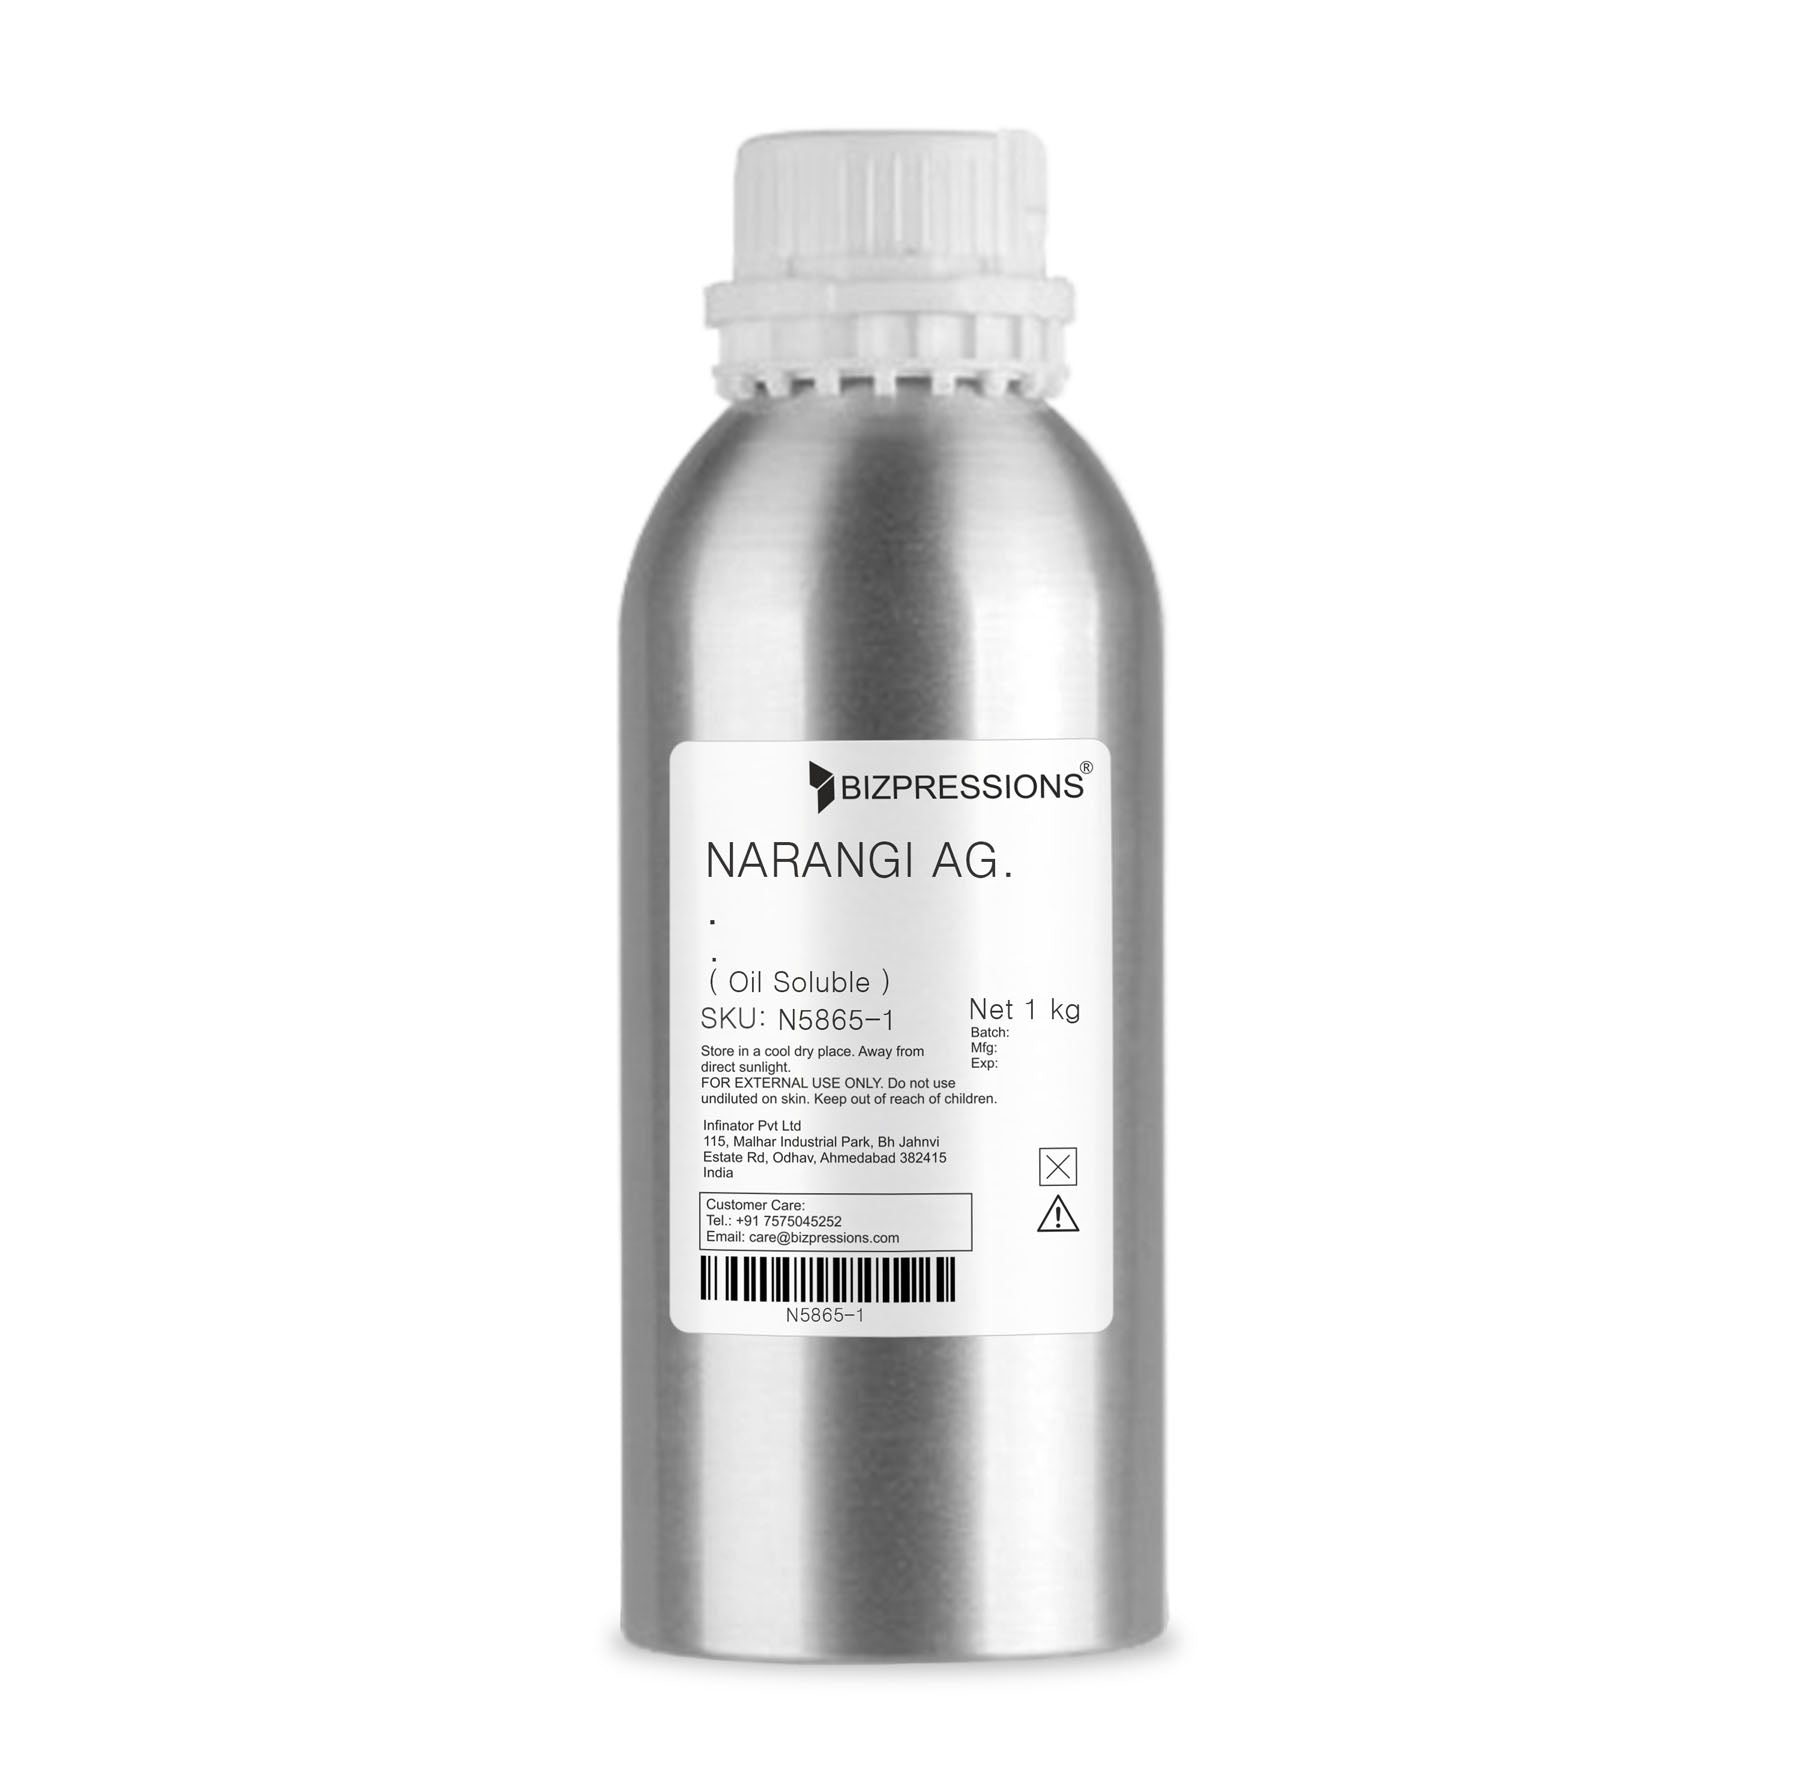 NARANGI AG. - Fragrance ( Oil Soluble ) - 1 kg